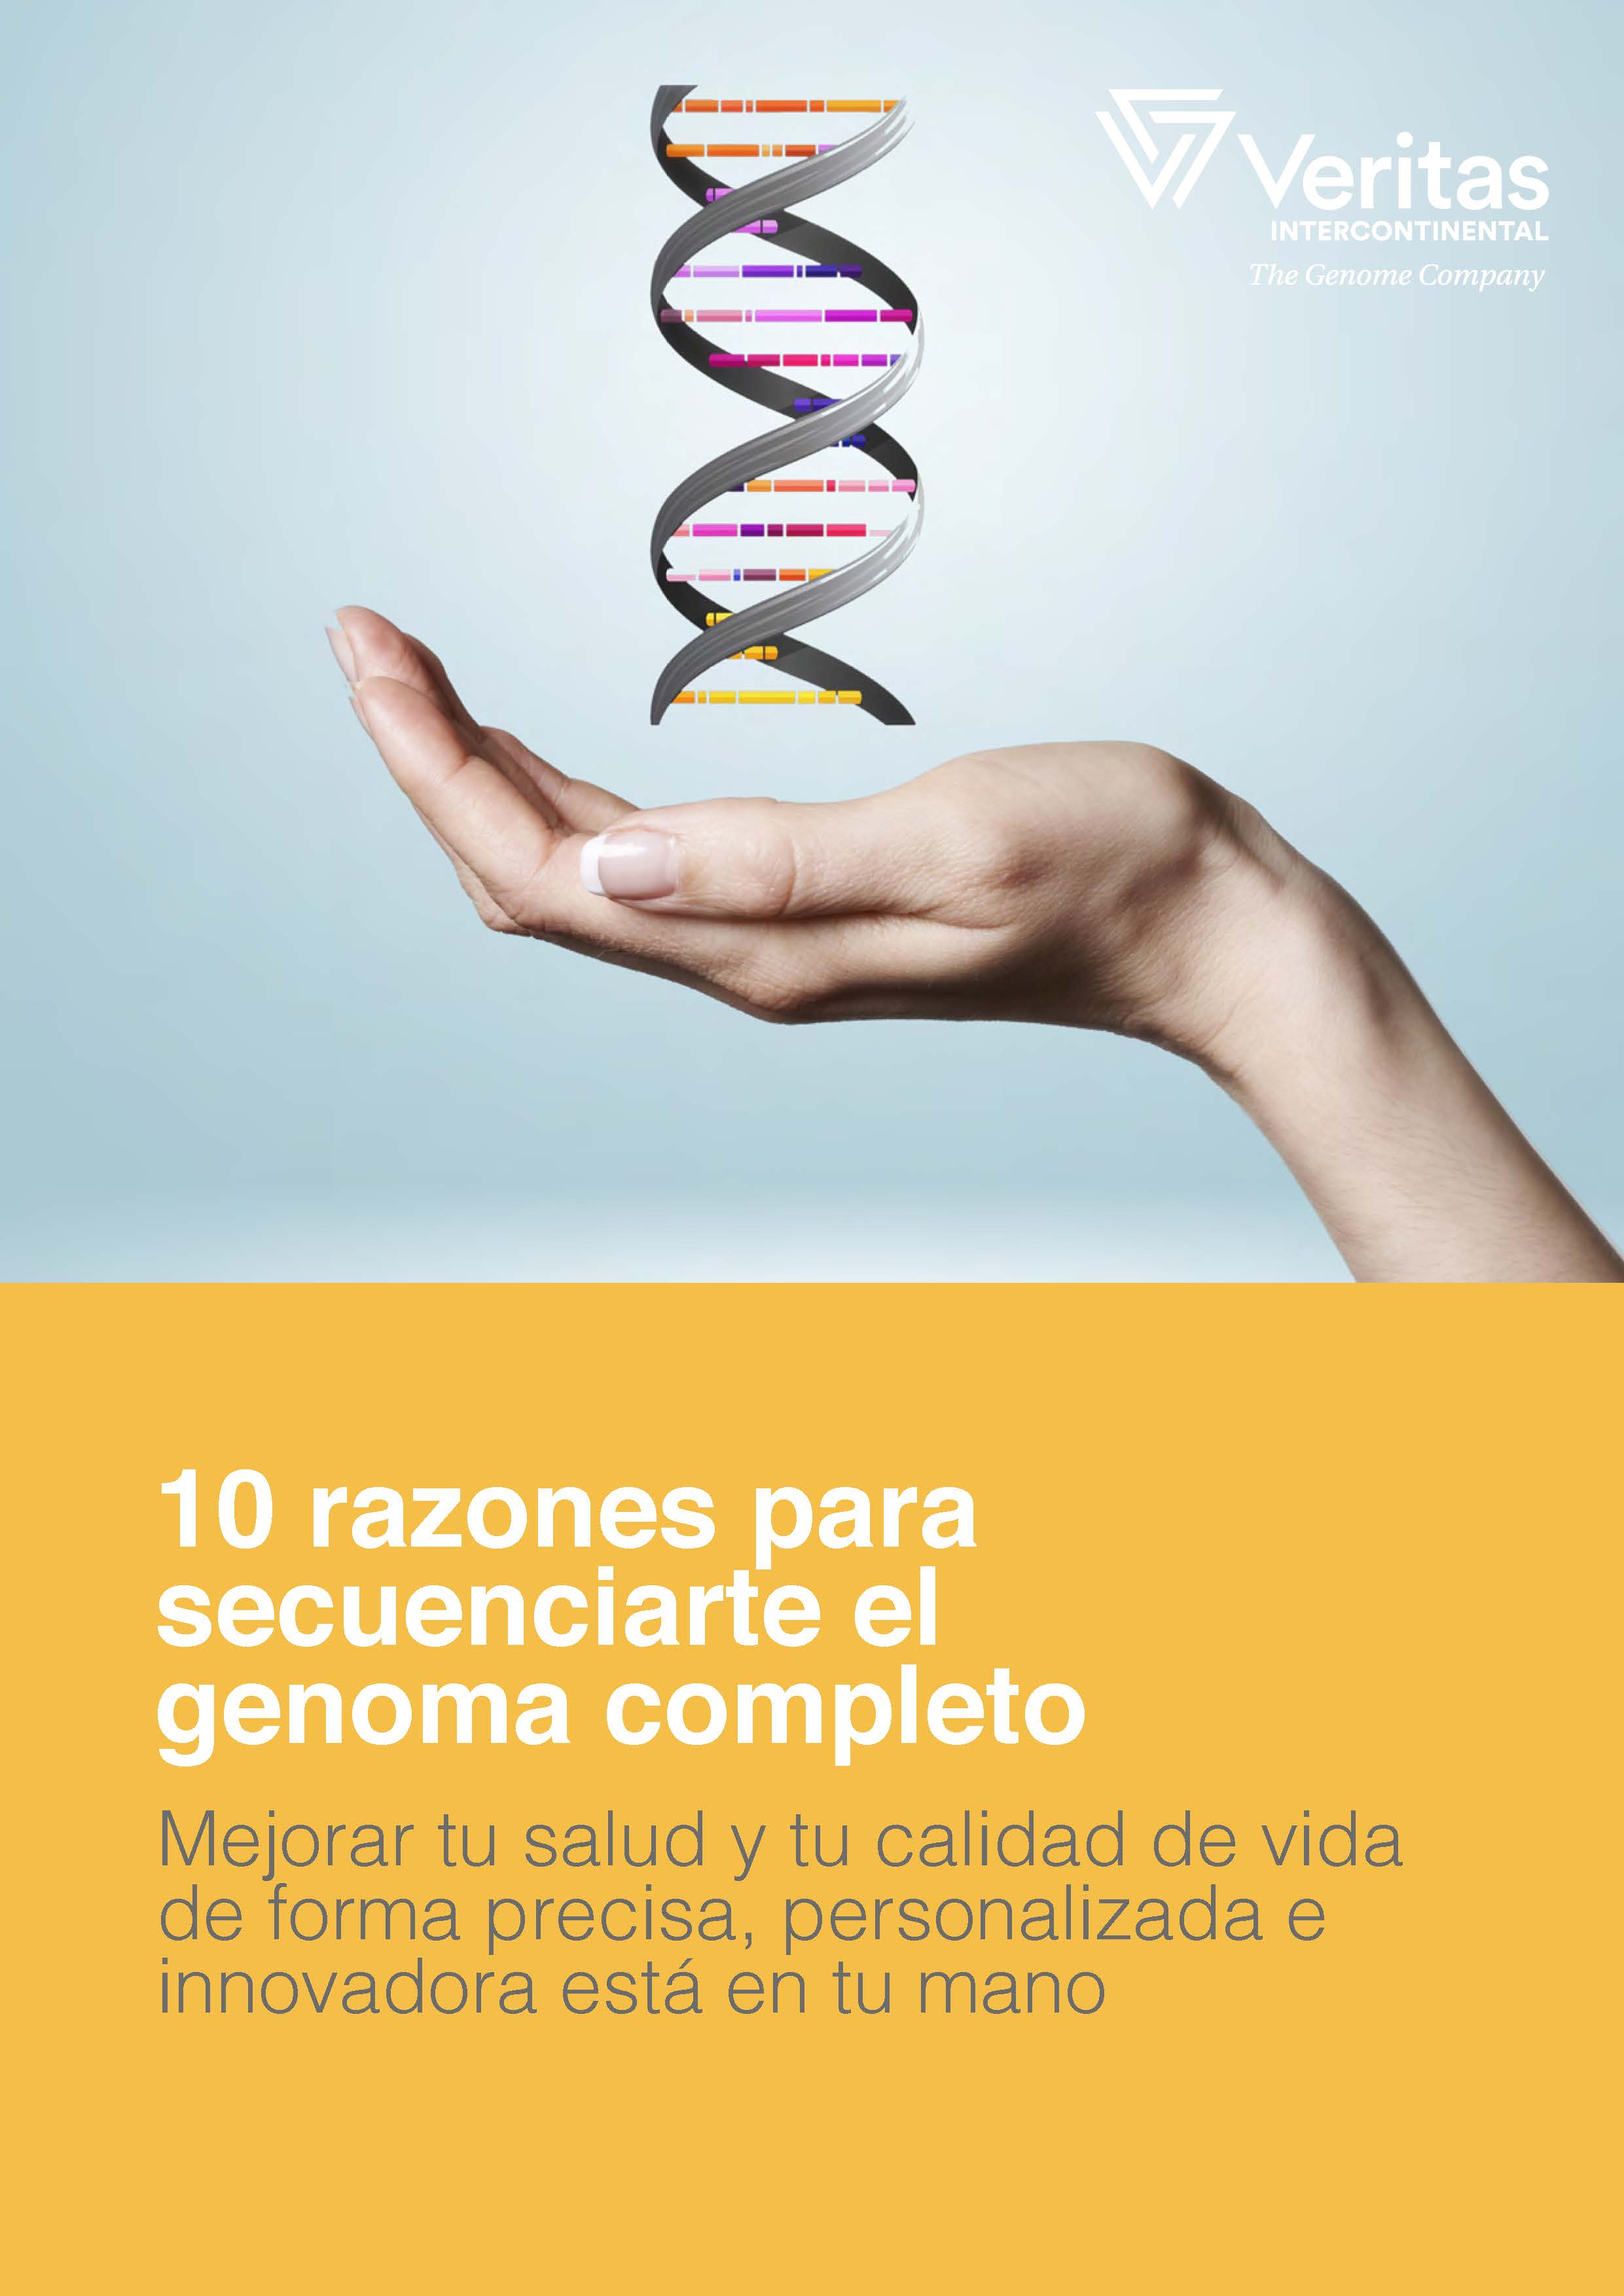 Portada eBook_10 razones para secuenciarte el genoma2